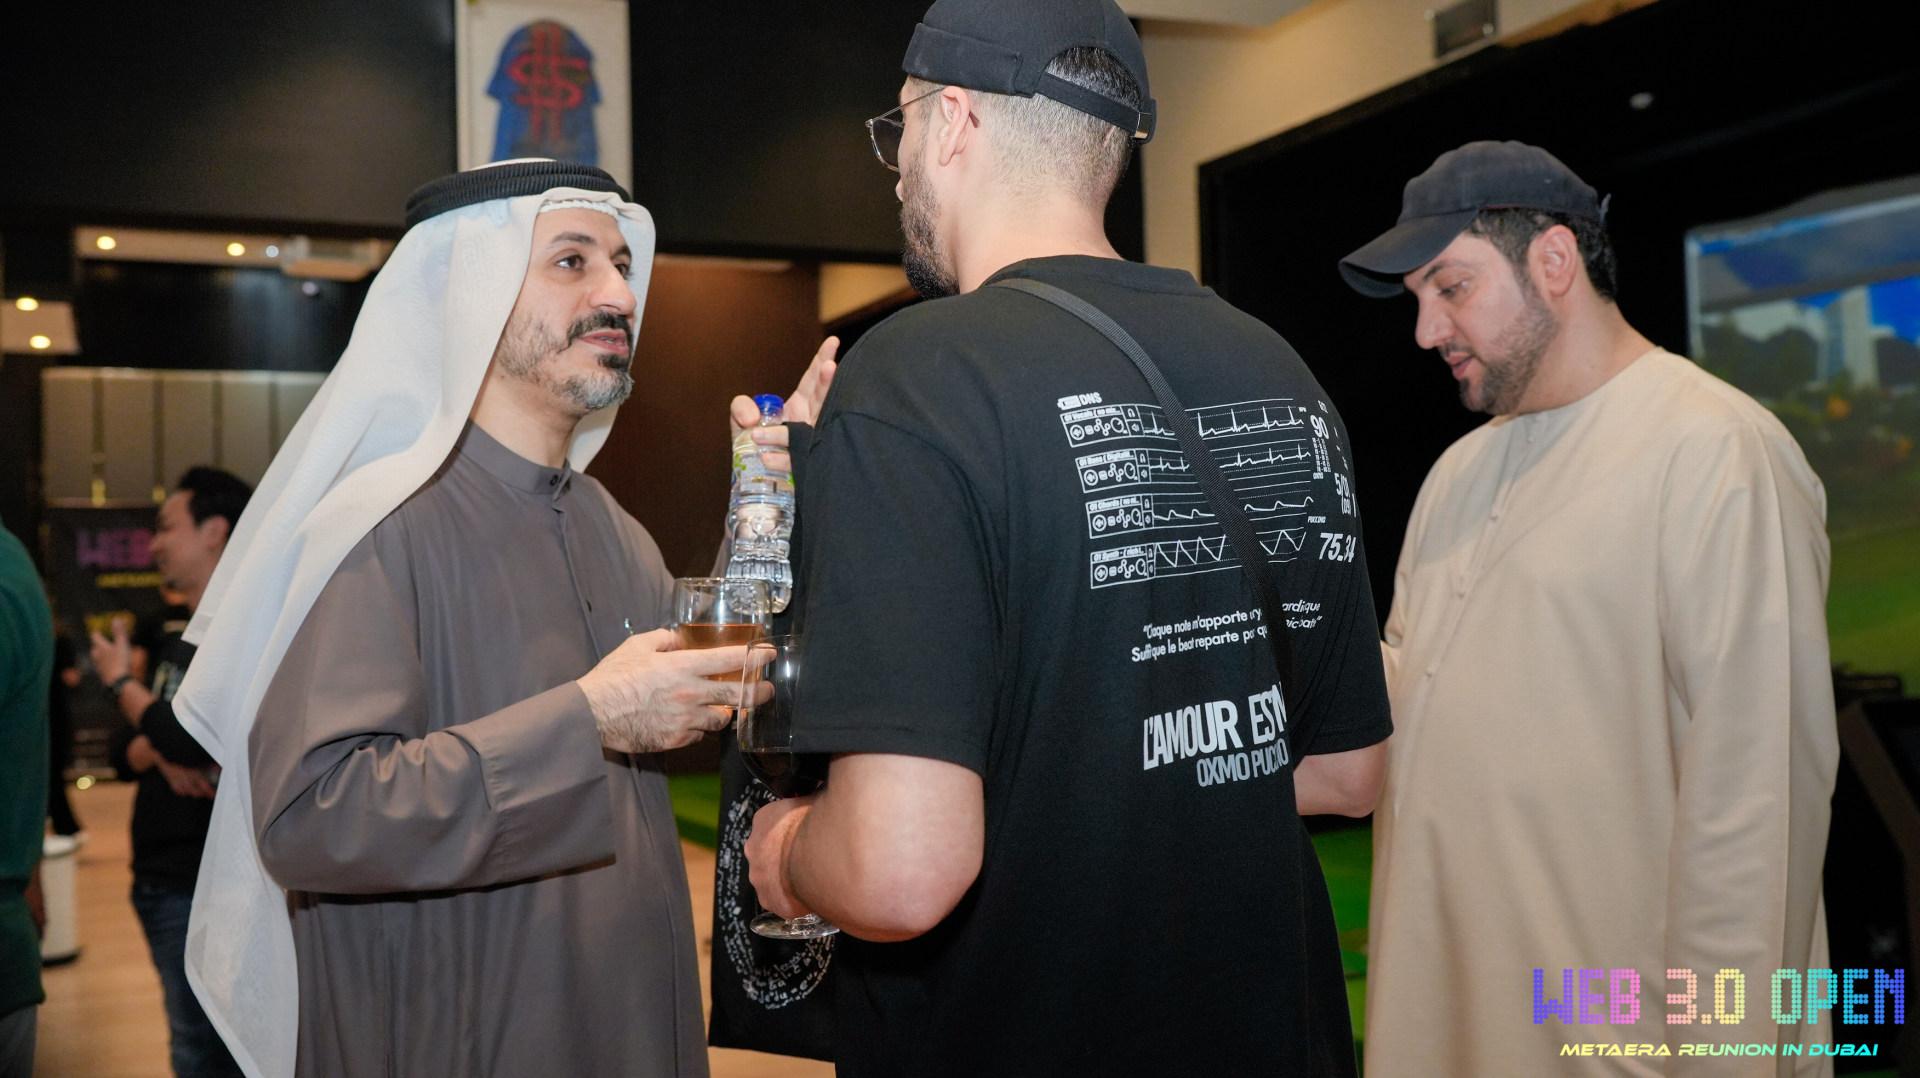 Meta Era 成功筹办 Web 3.0 Open - Meta Era Reunion in Dubai 峰会，畅想迪拜数字经济新可能